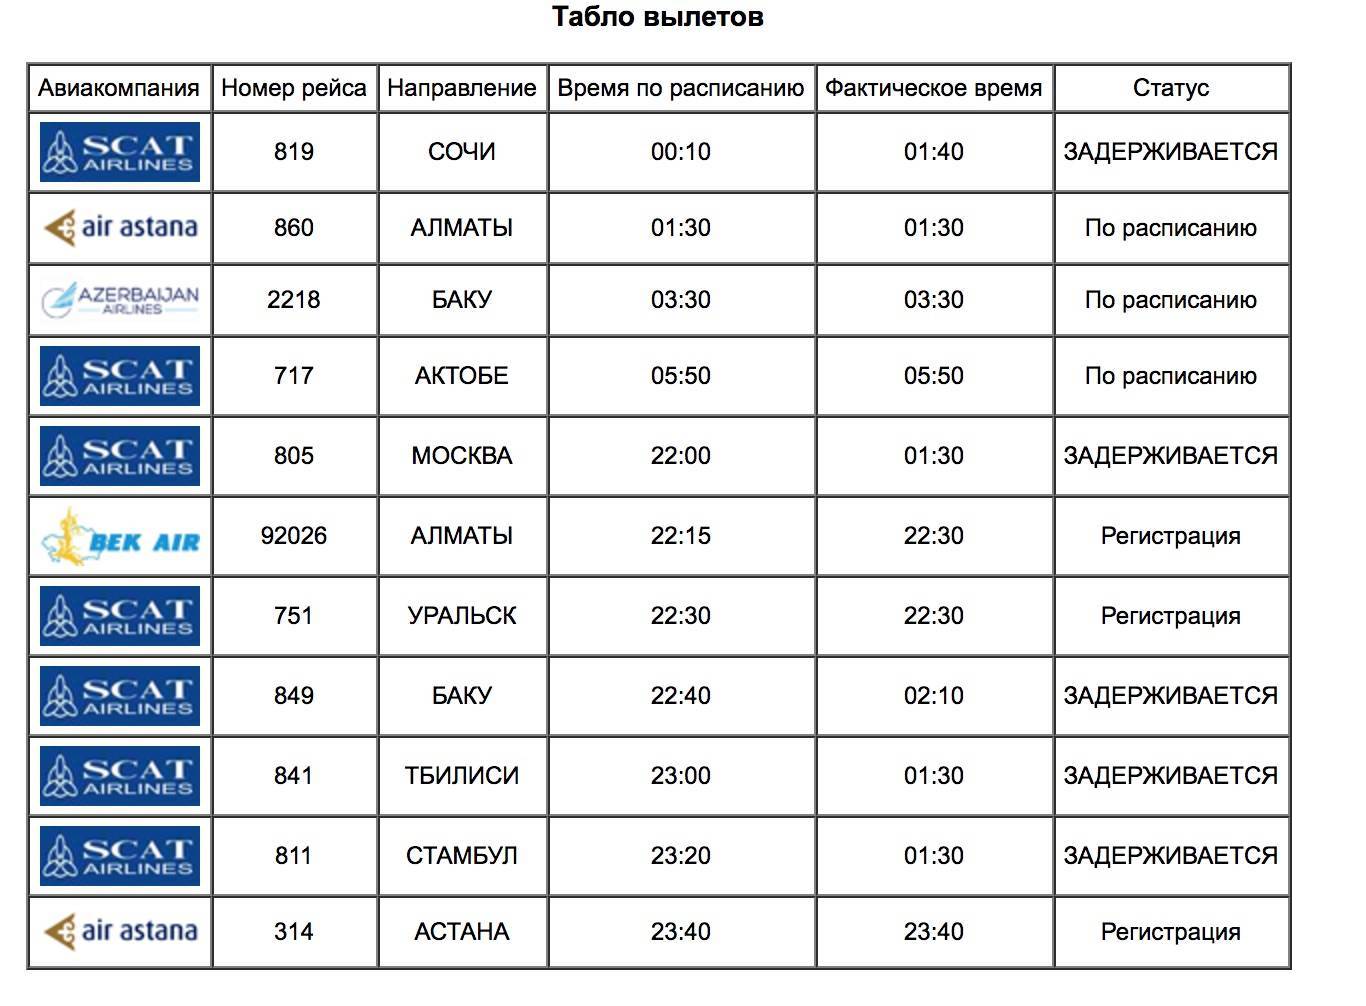 Аэропорт алматы (ala) казахстан - расписание рейсов, авиабилеты